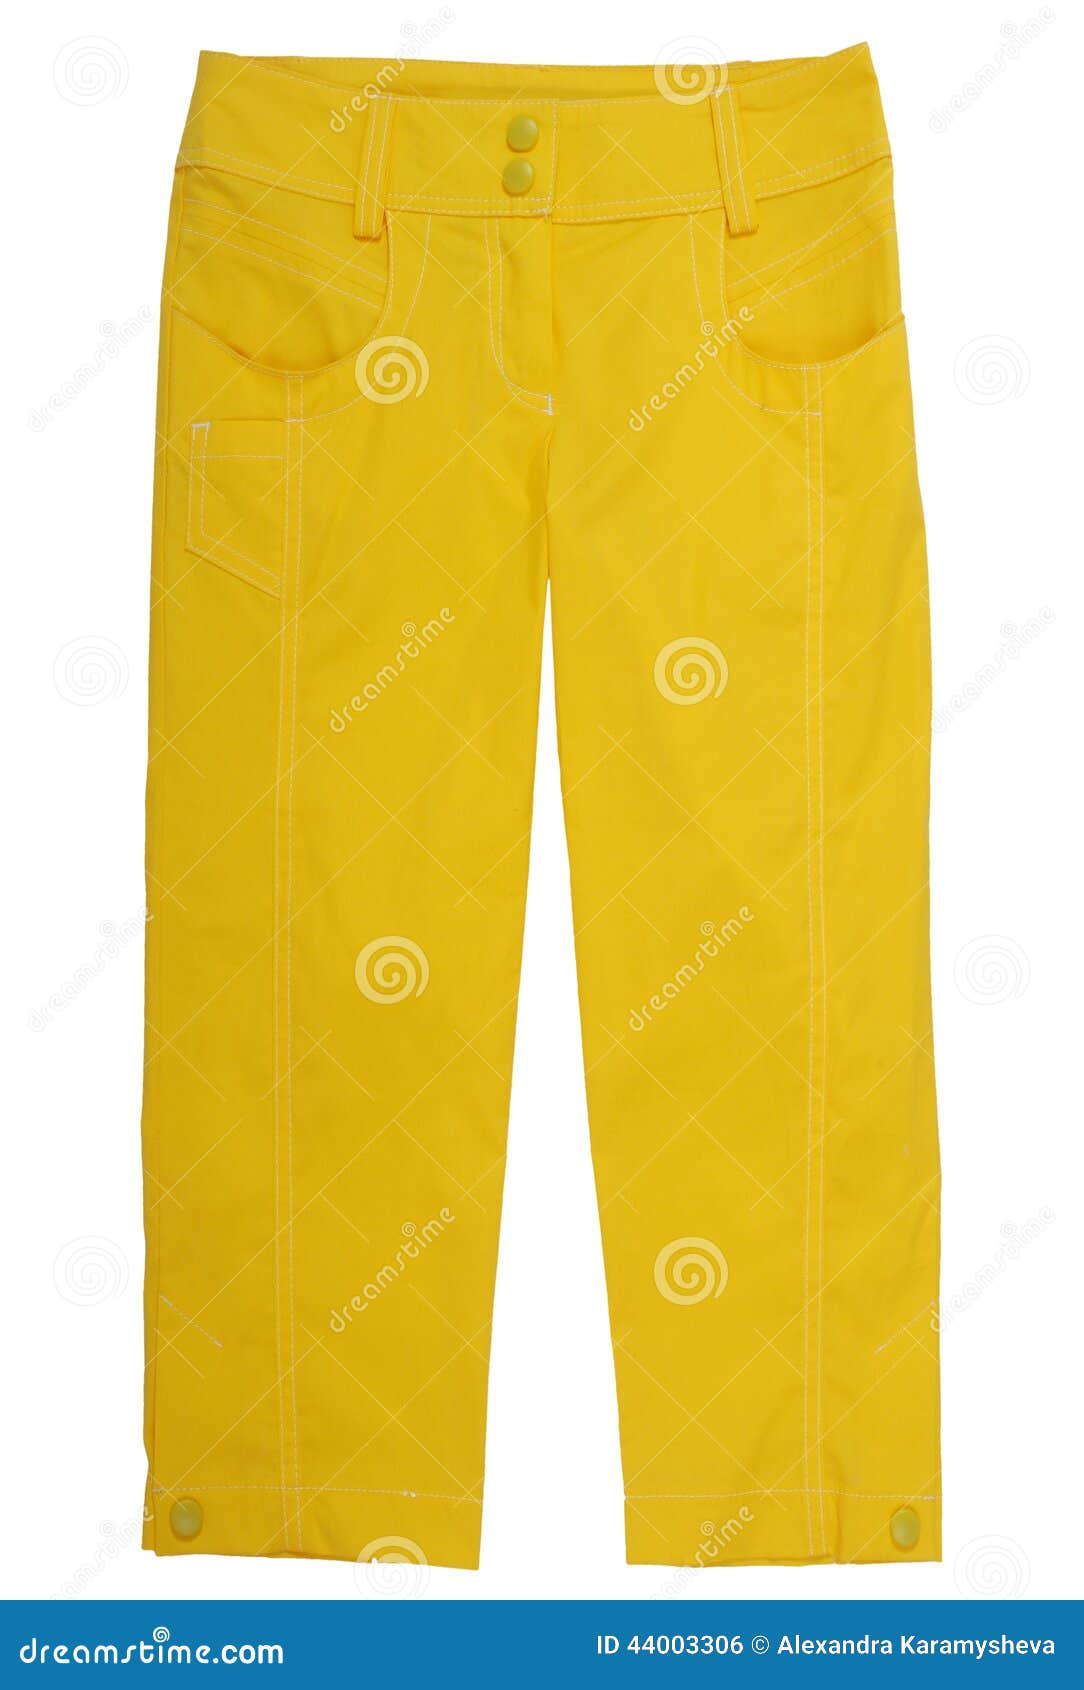 yellow breeches